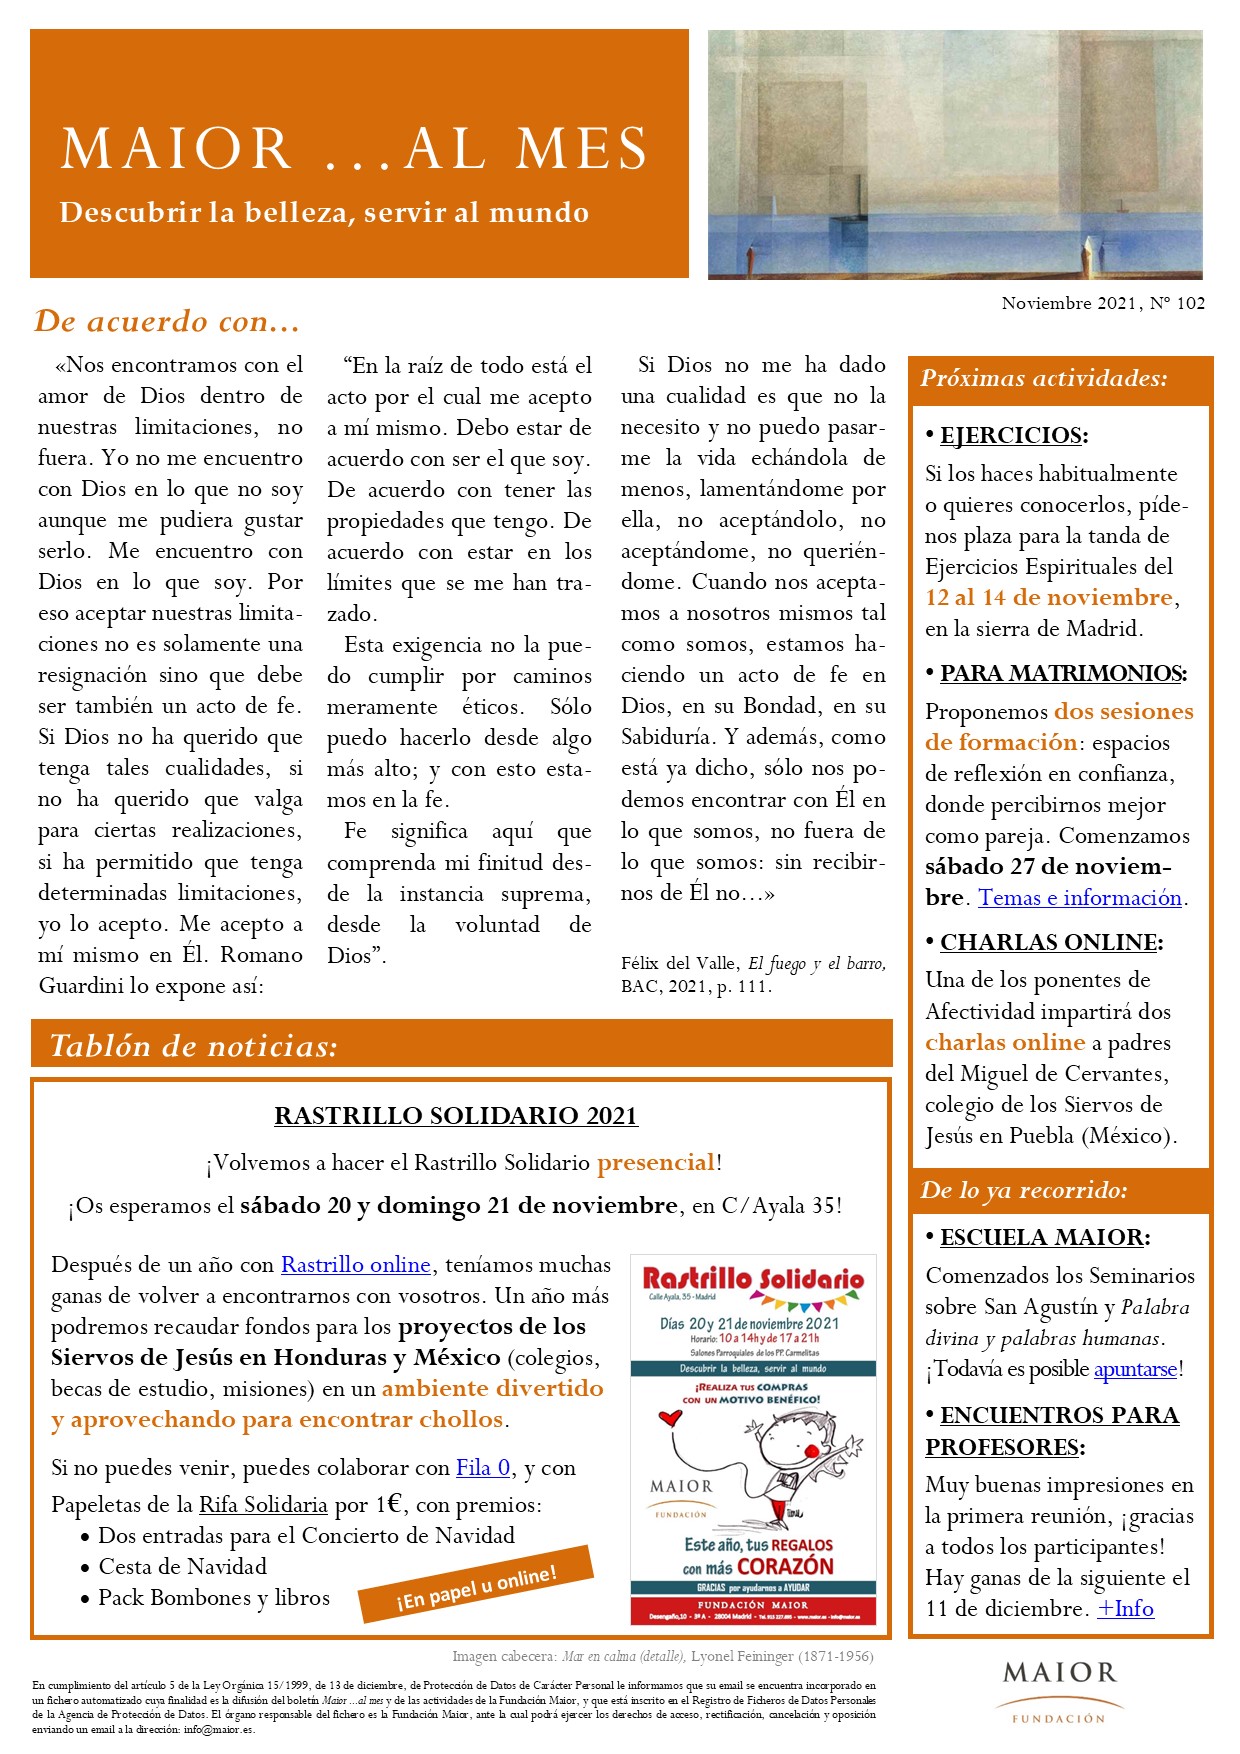 Boletín mensual de noticias y actividades de la Fundación Maior. Edición de noviembre 2021